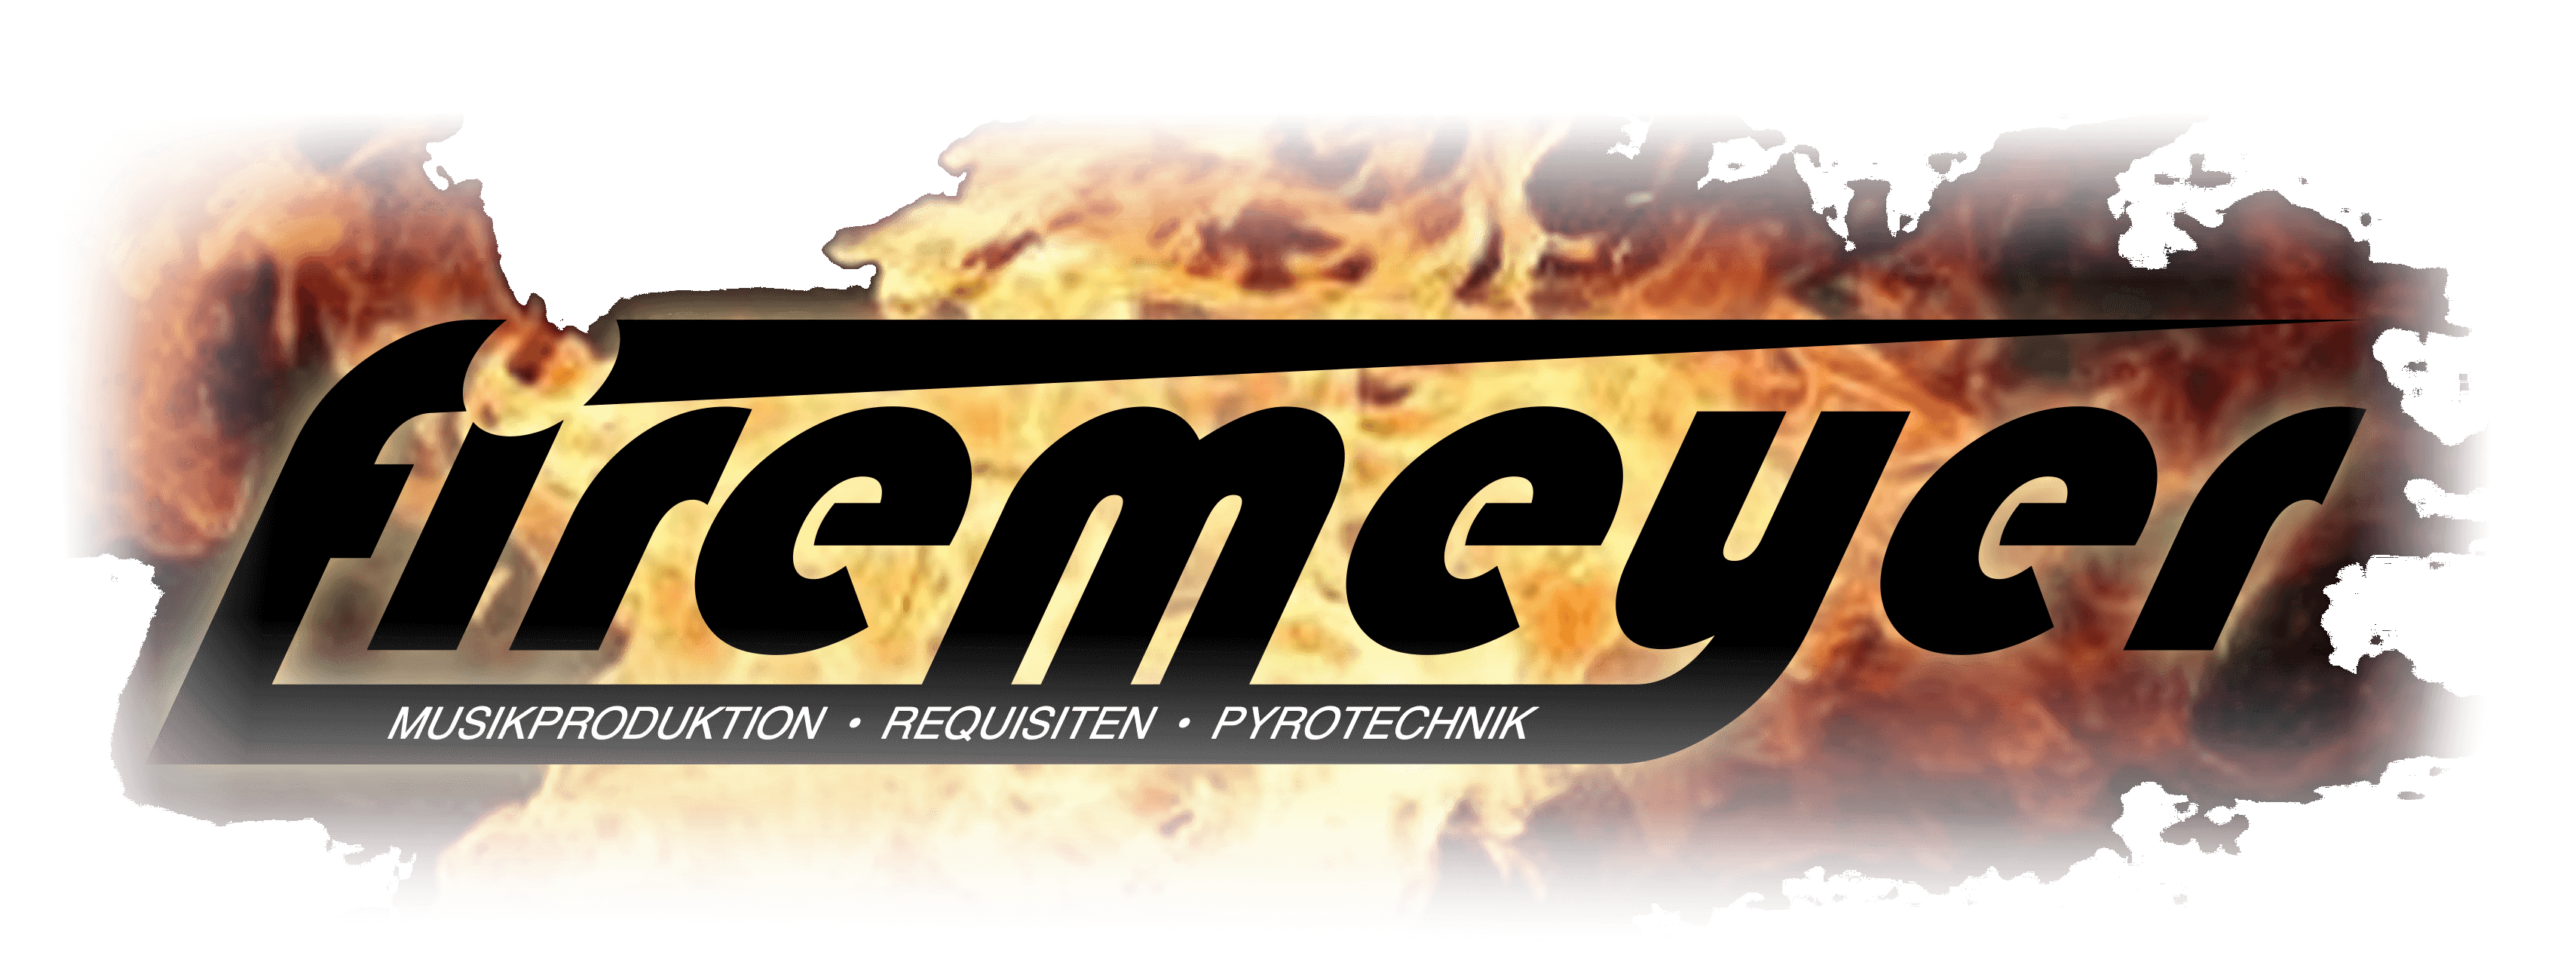 firemeyer – Musikproduktion, Requisiten und Pyrotechnik